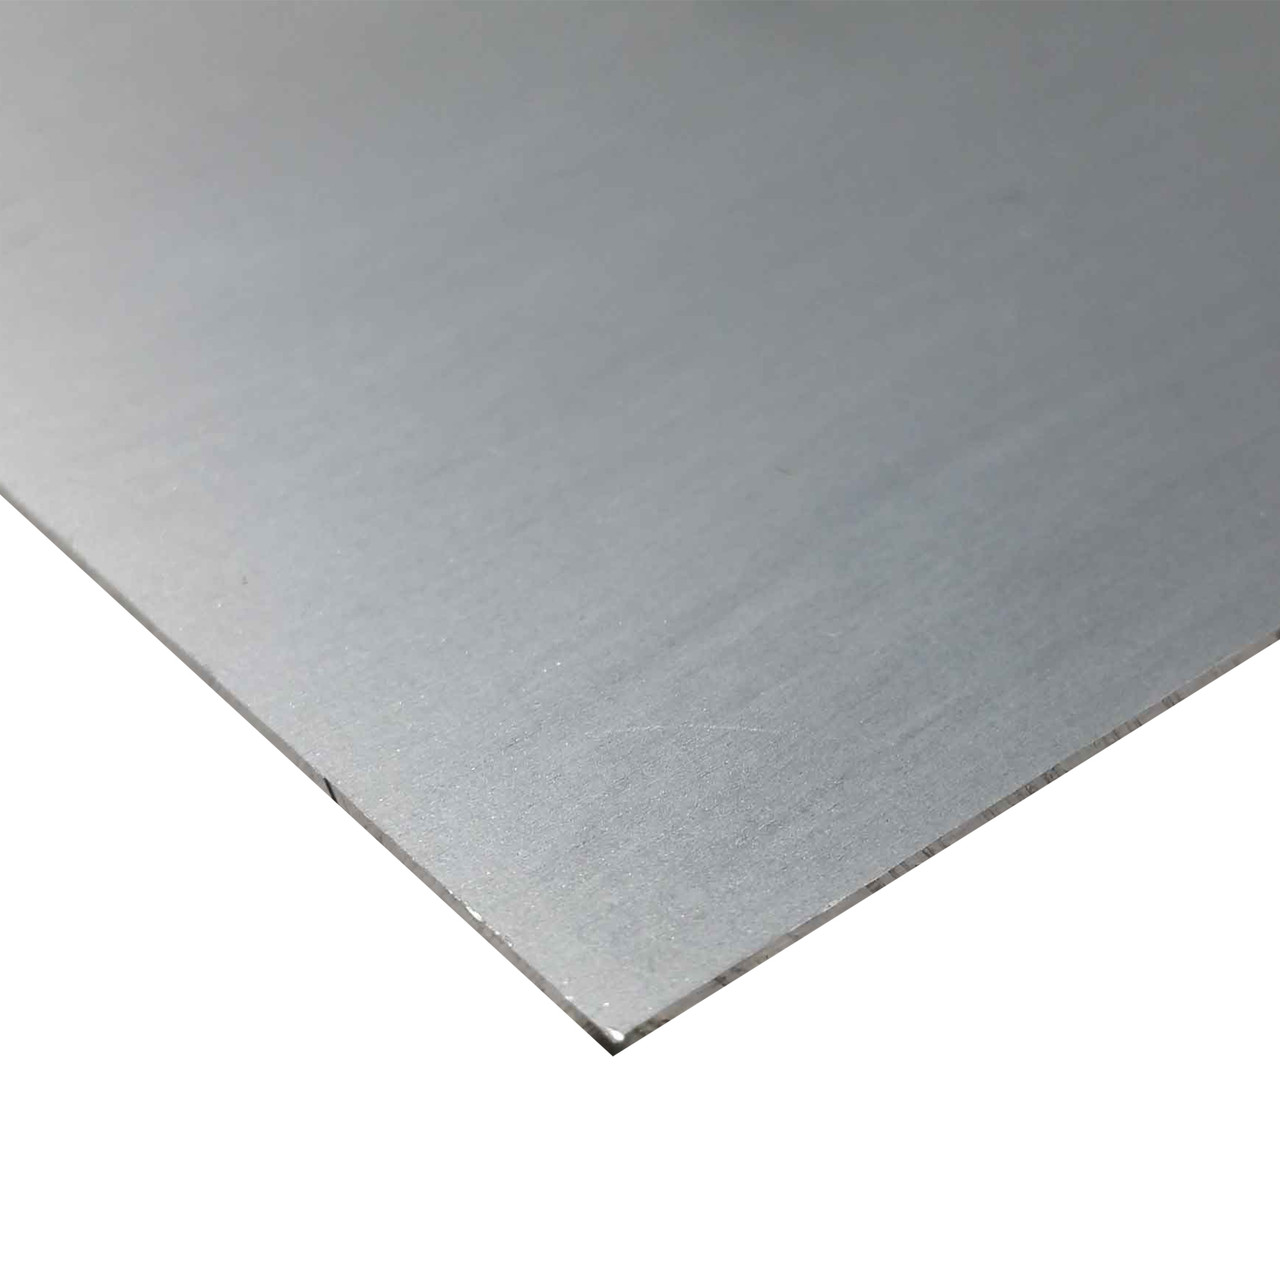 0.050" x 24" x 48", 2024-T3 Aluminum Sheet, Alclad